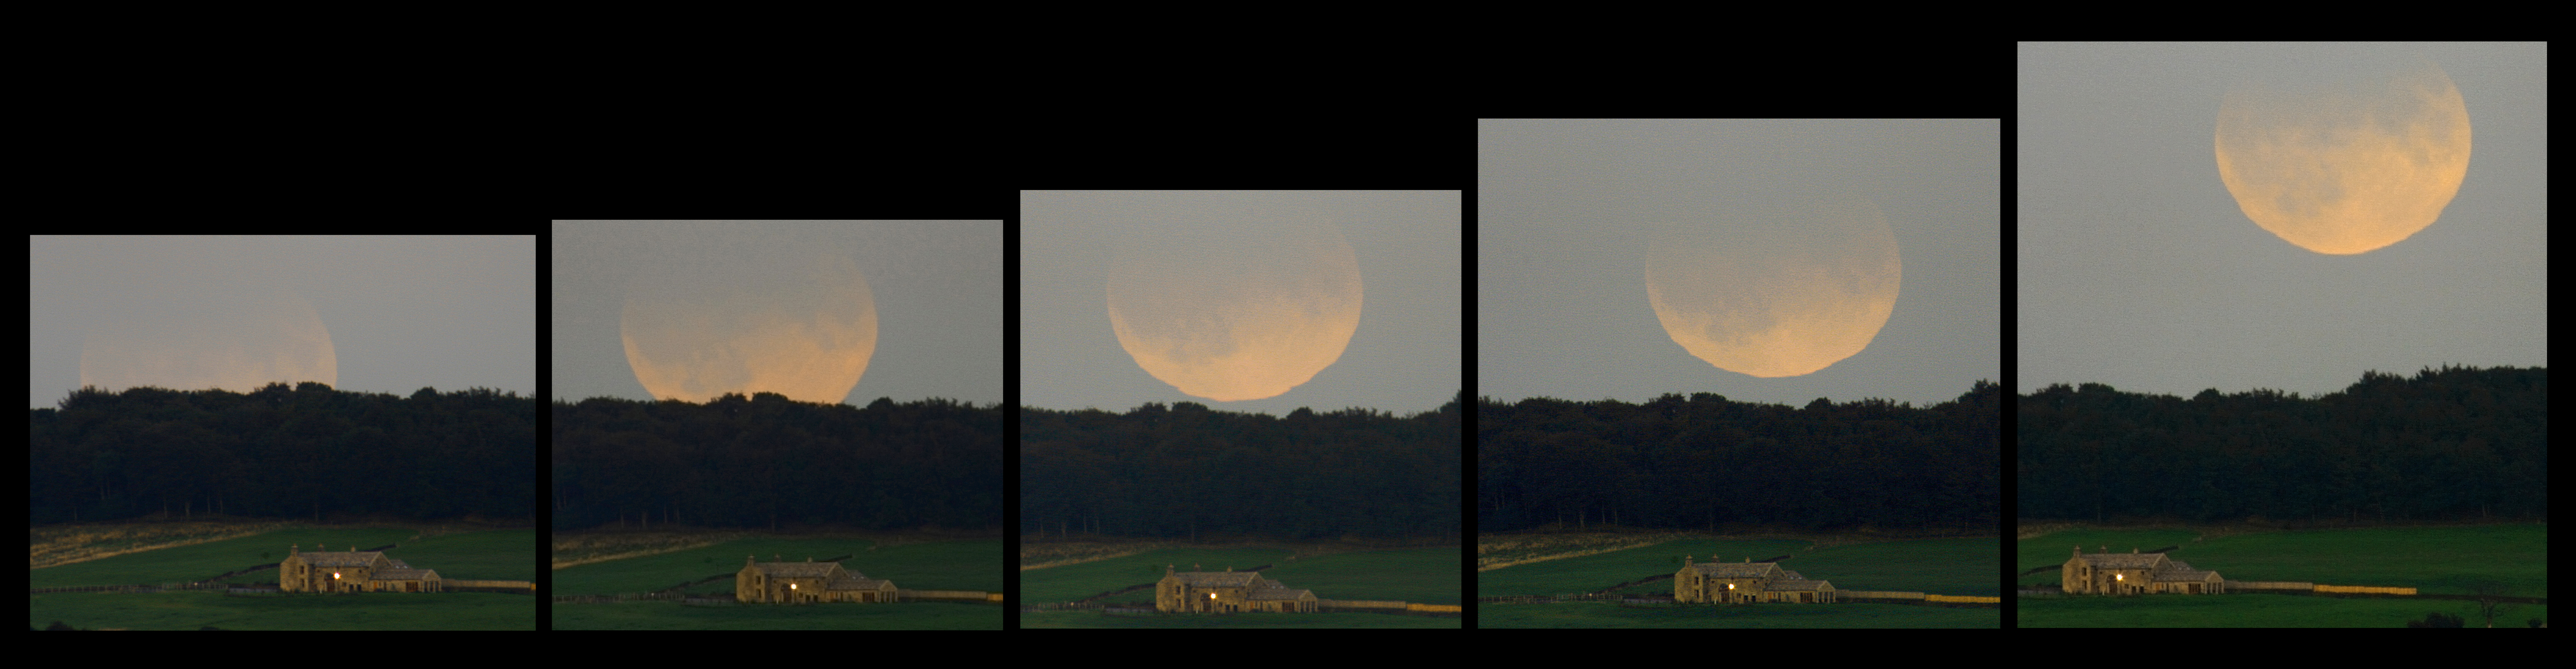 Время затмения 8 апреля. Восход Луны на экваторе. Вид Луны на экваторе. Луна не видна на экваторе. Восход полумесяца на экваторе.